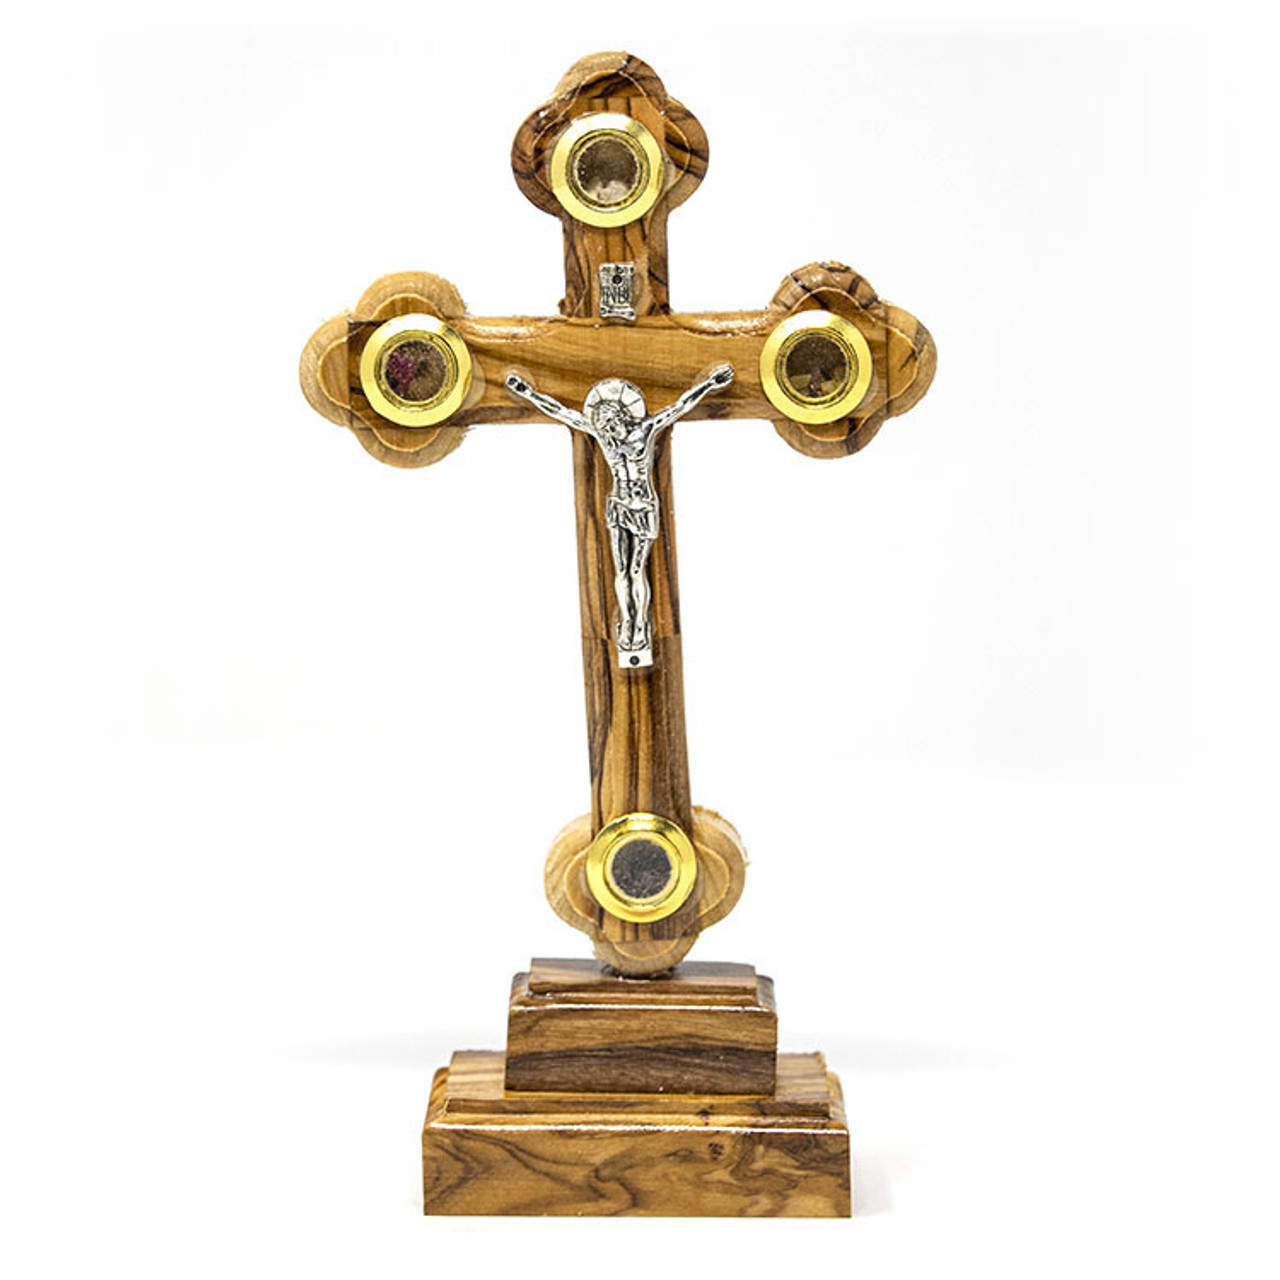 Large Budded, Olive wood Orthodox crosses, made in Bethlehem Holy land